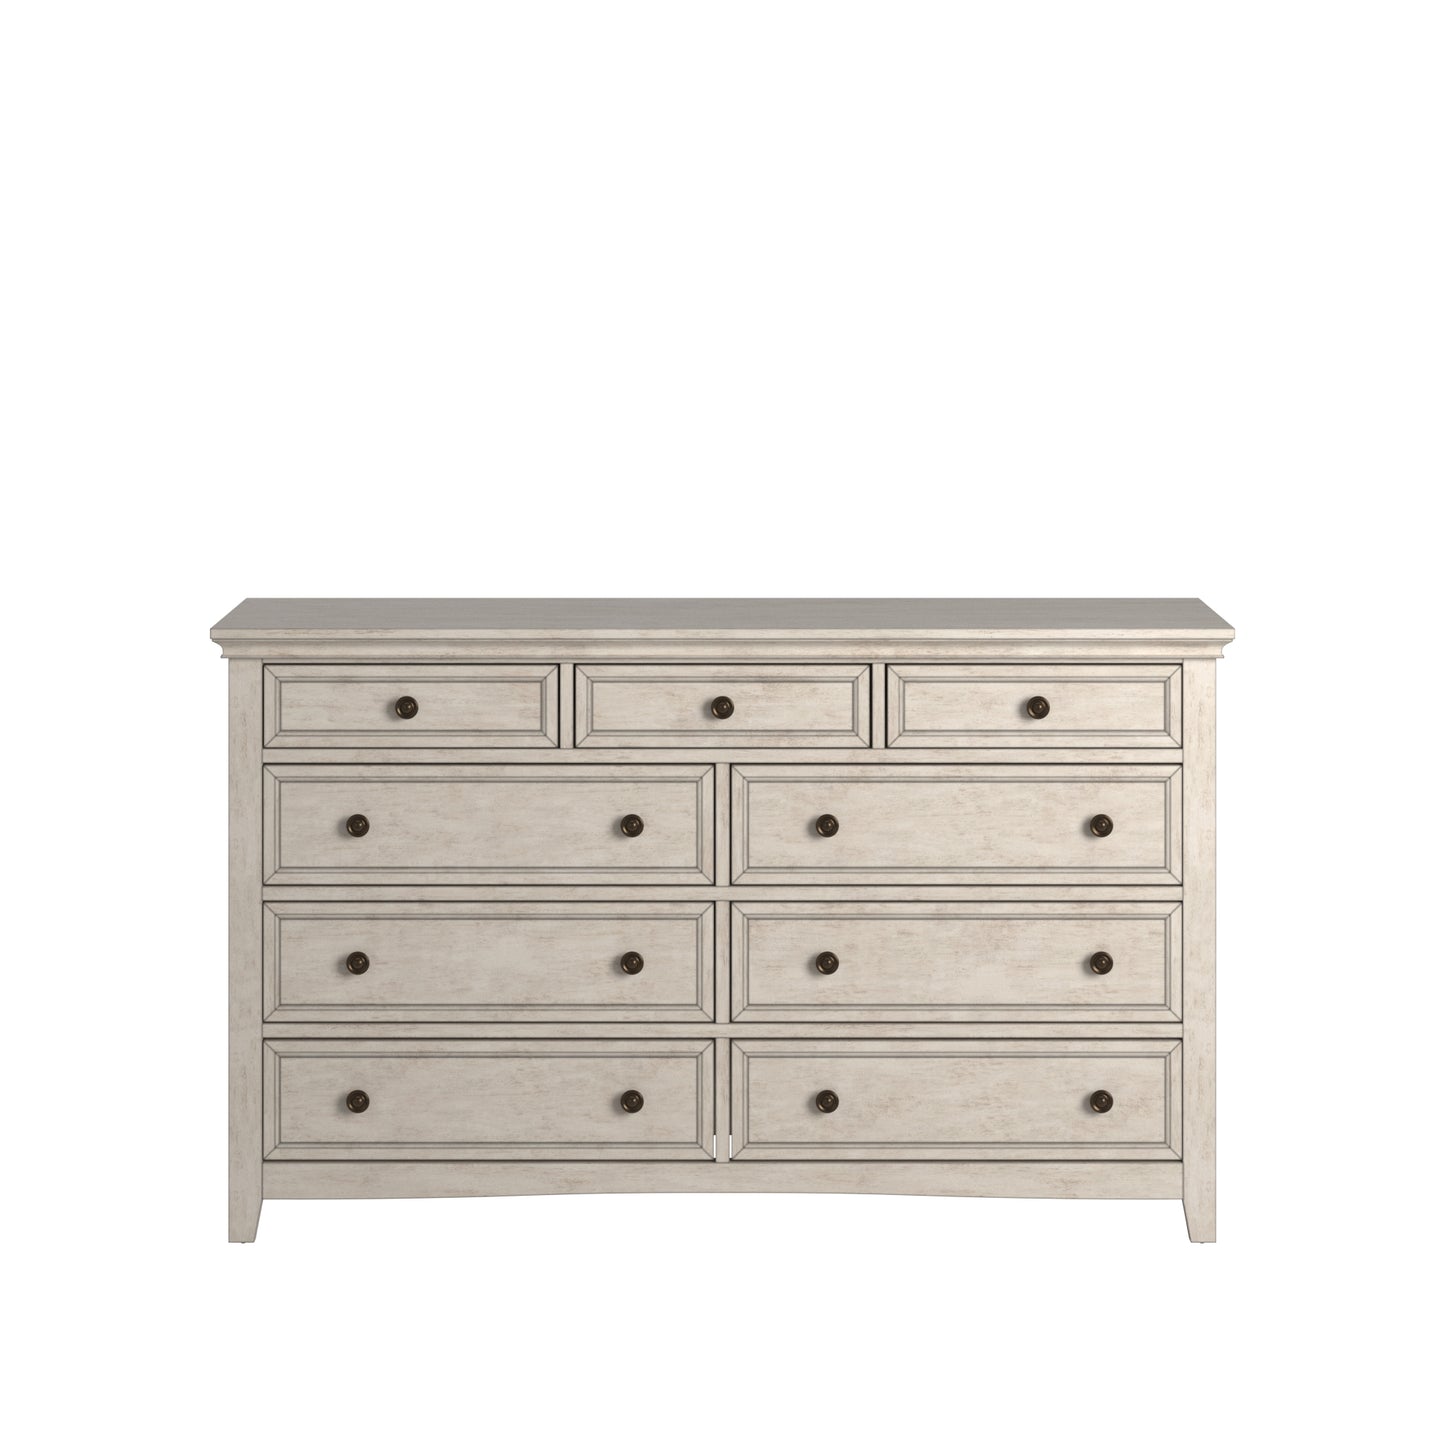 9-Drawer Wood Modular Storage Dresser - Antique White Finish, Dresser Only